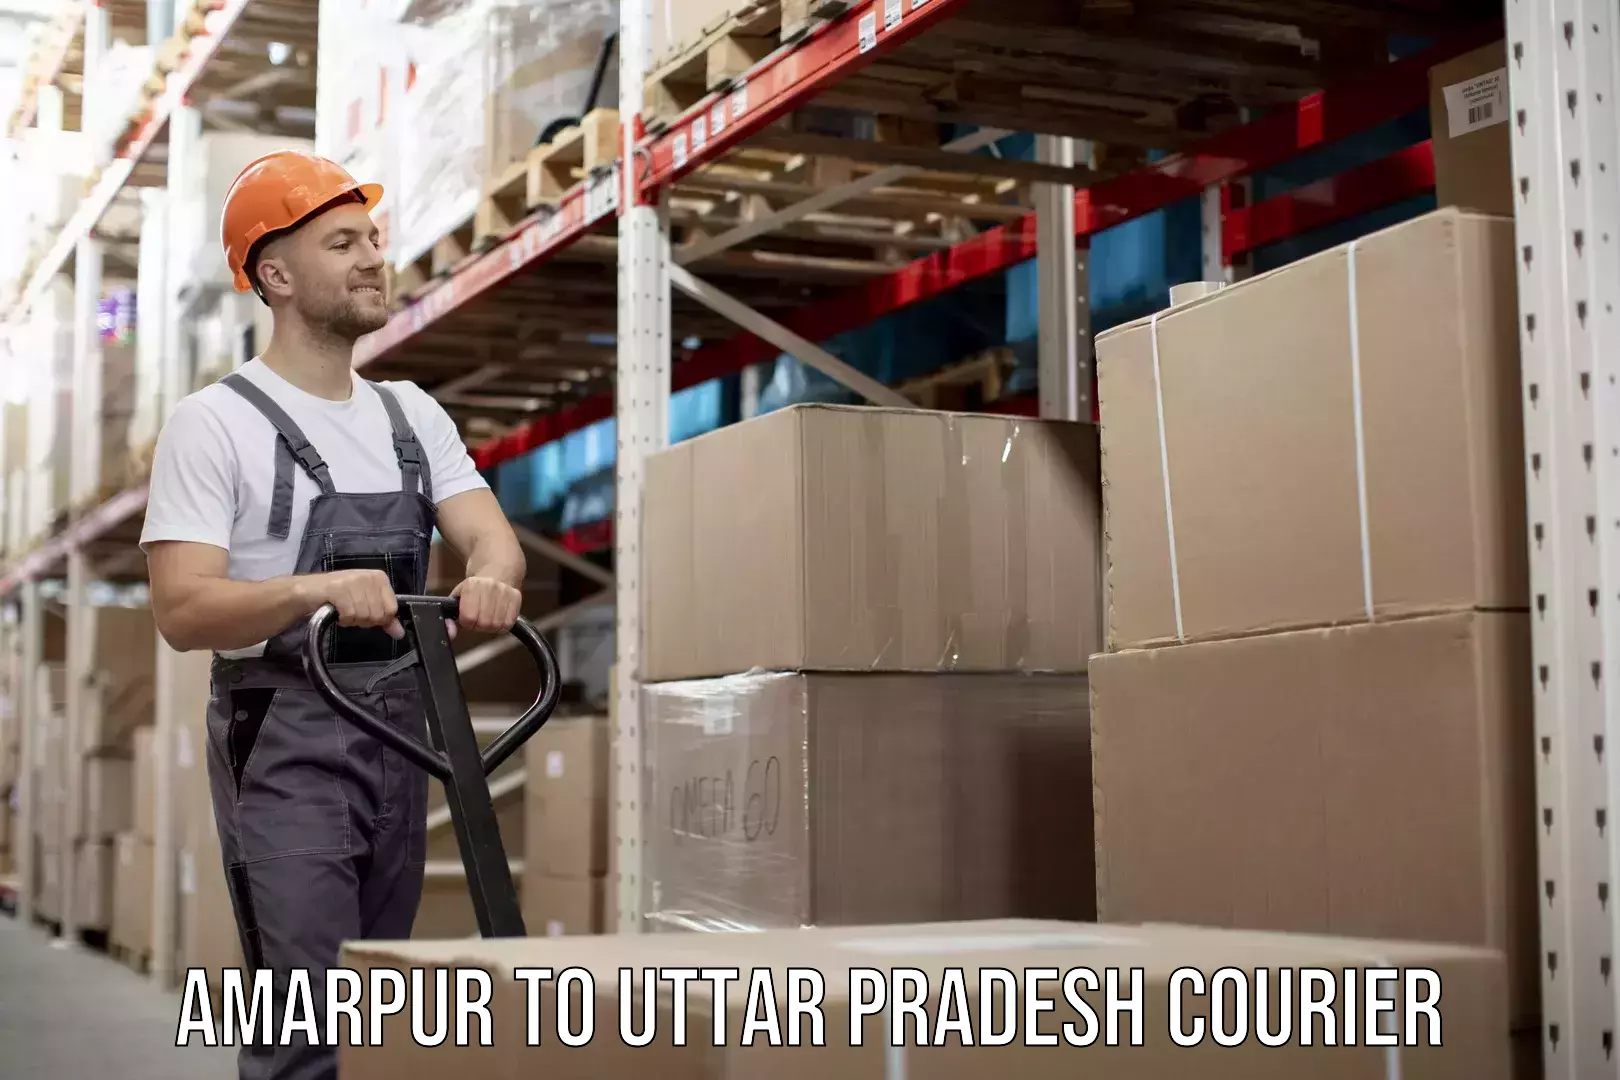 Weekend courier service Amarpur to Uttar Pradesh